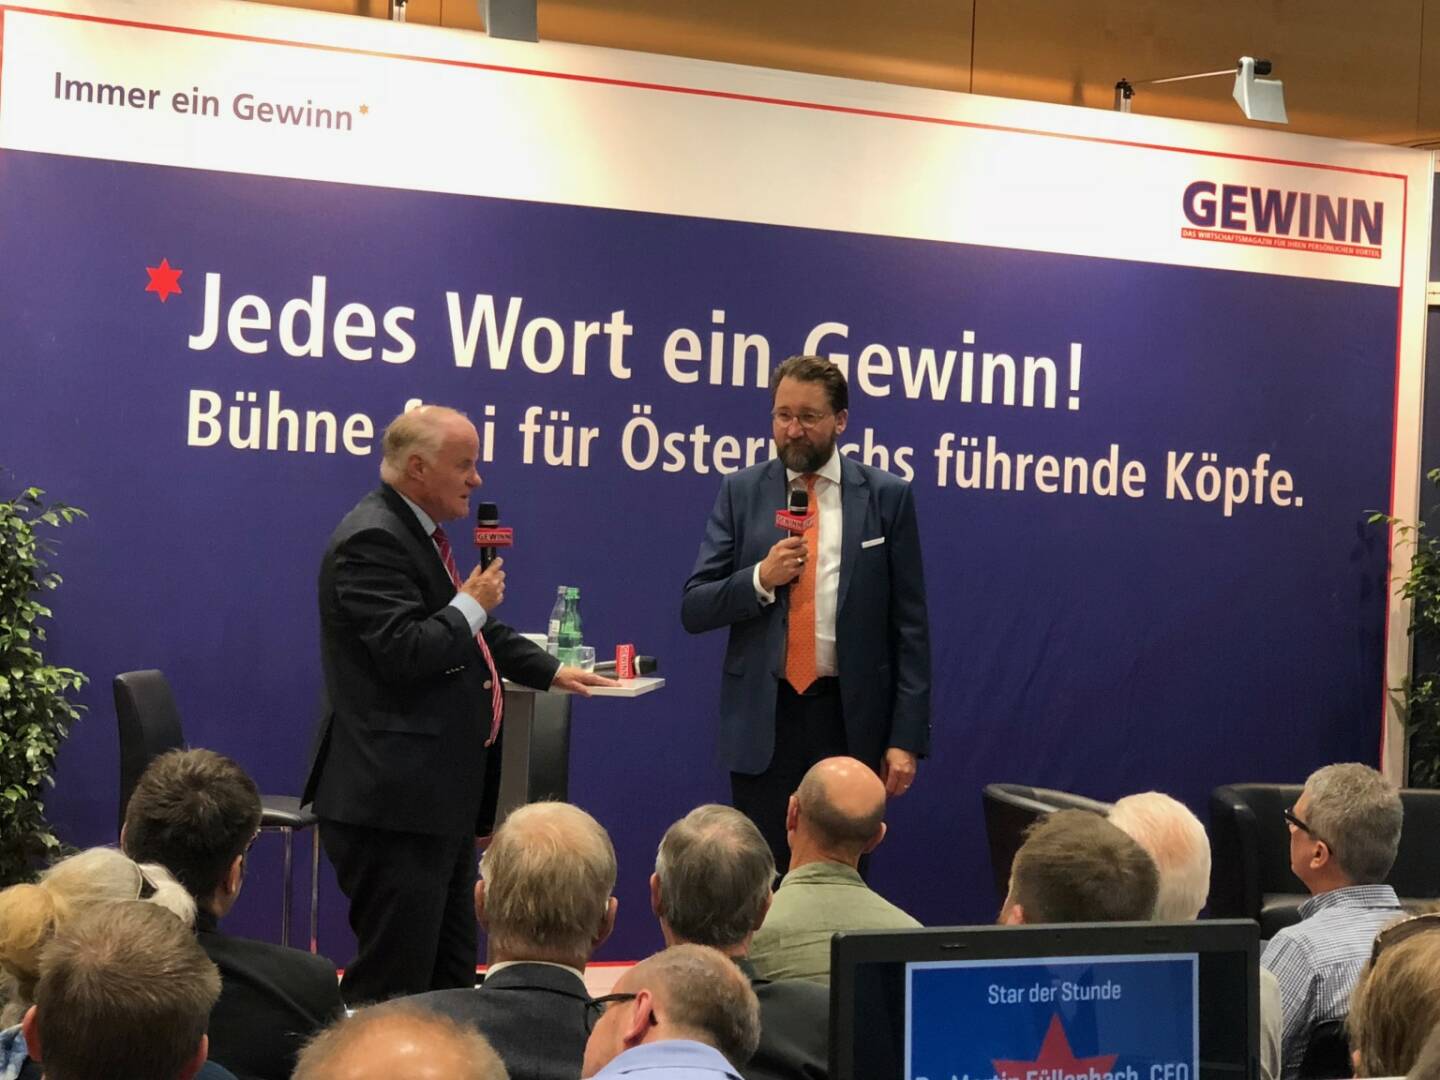 Semperit-CEO Martin Füllenbach bei Georg Wailand (Gewinn) als Star der Stunde bei der Gewinn Messe